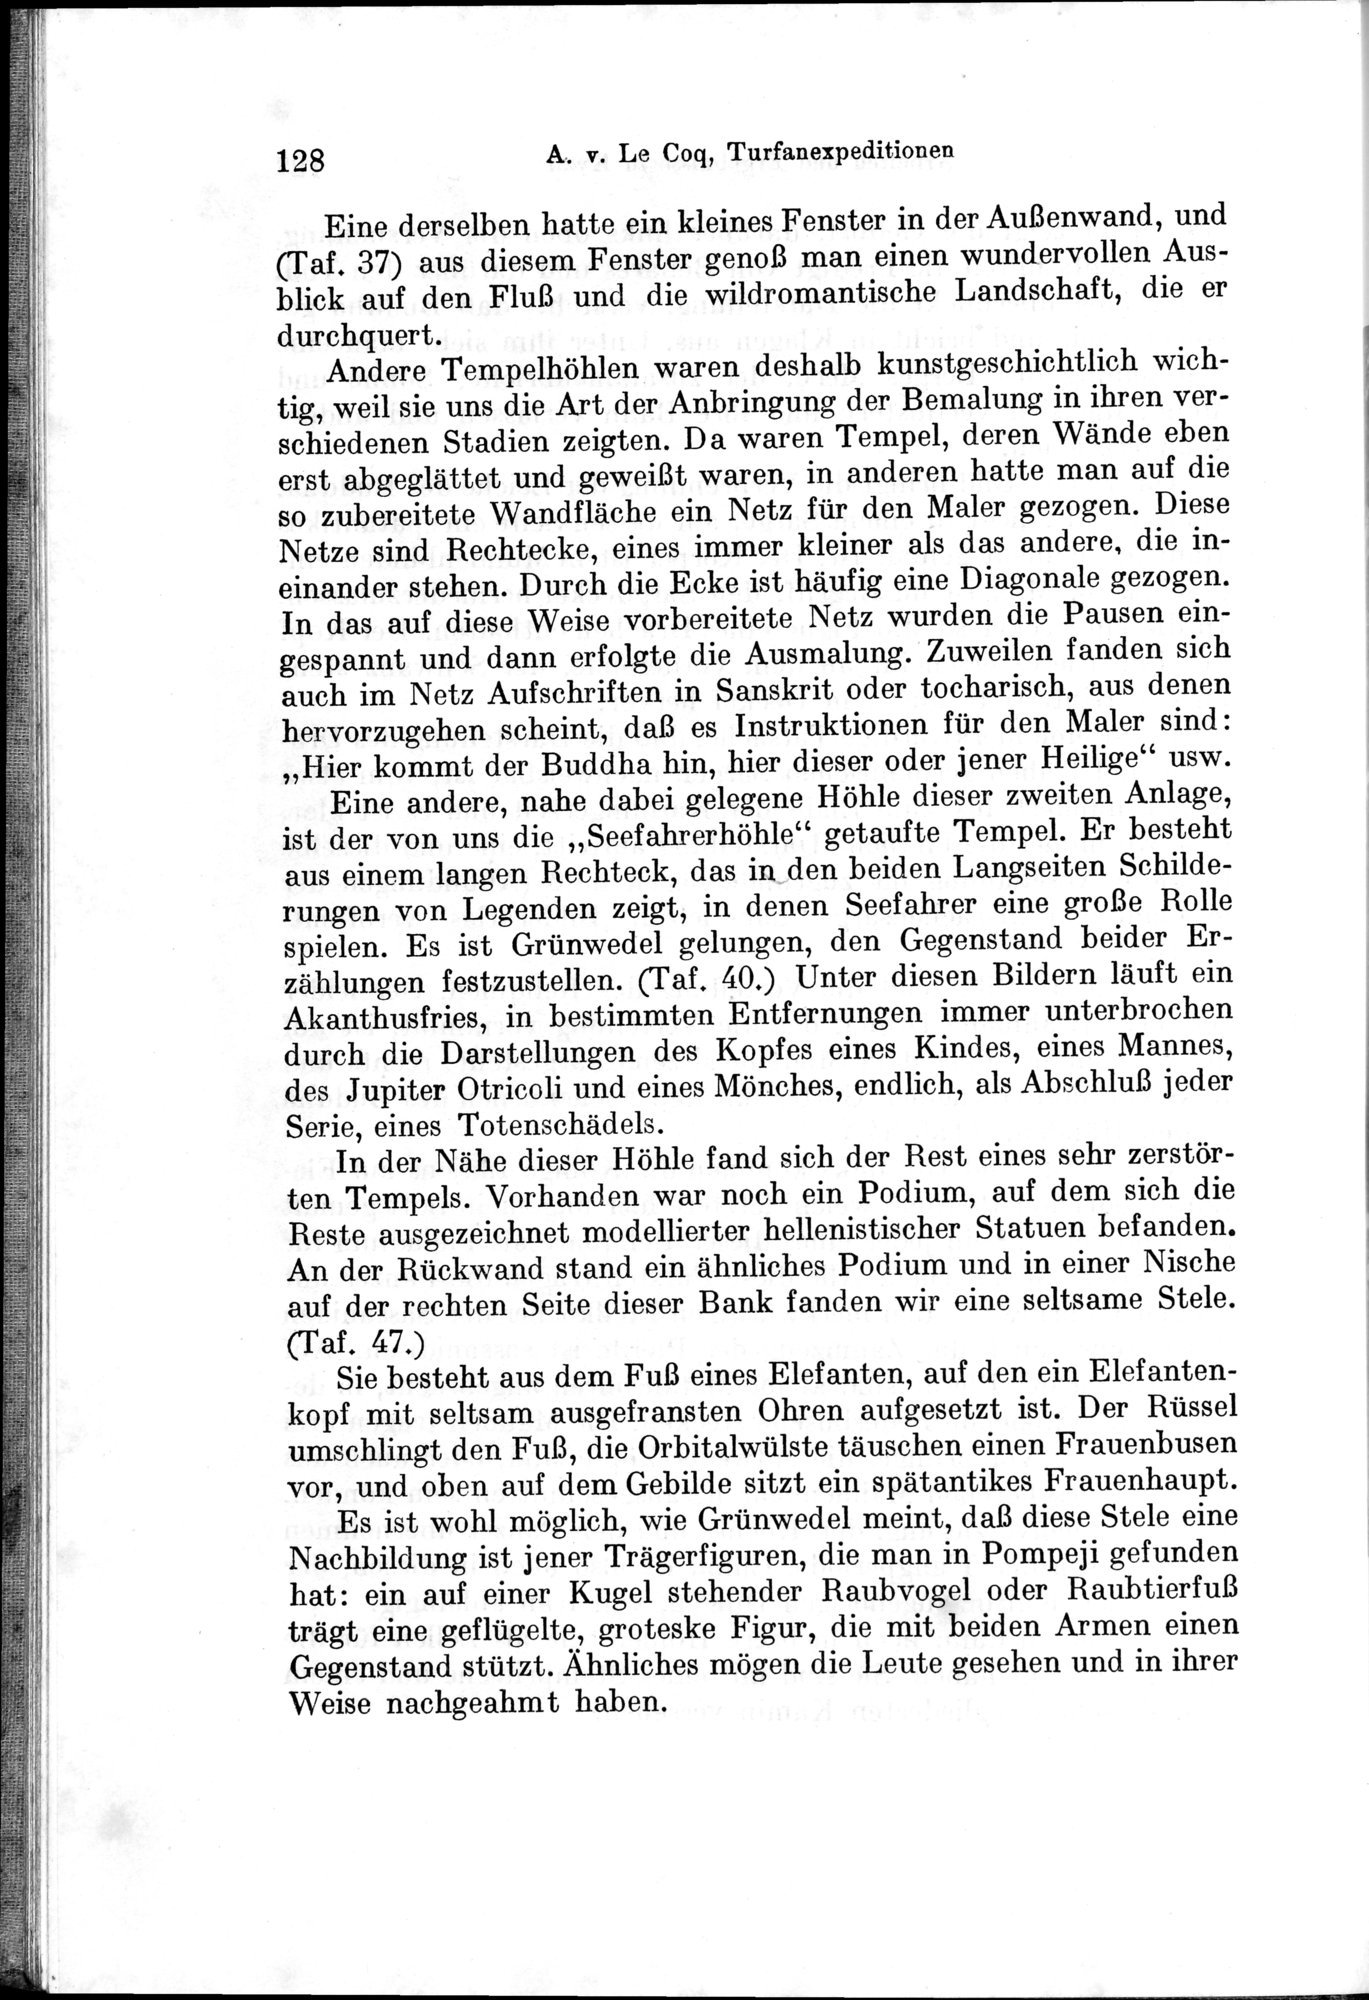 Auf Hellas Spuren in Ostturkistan : vol.1 / Page 184 (Grayscale High Resolution Image)